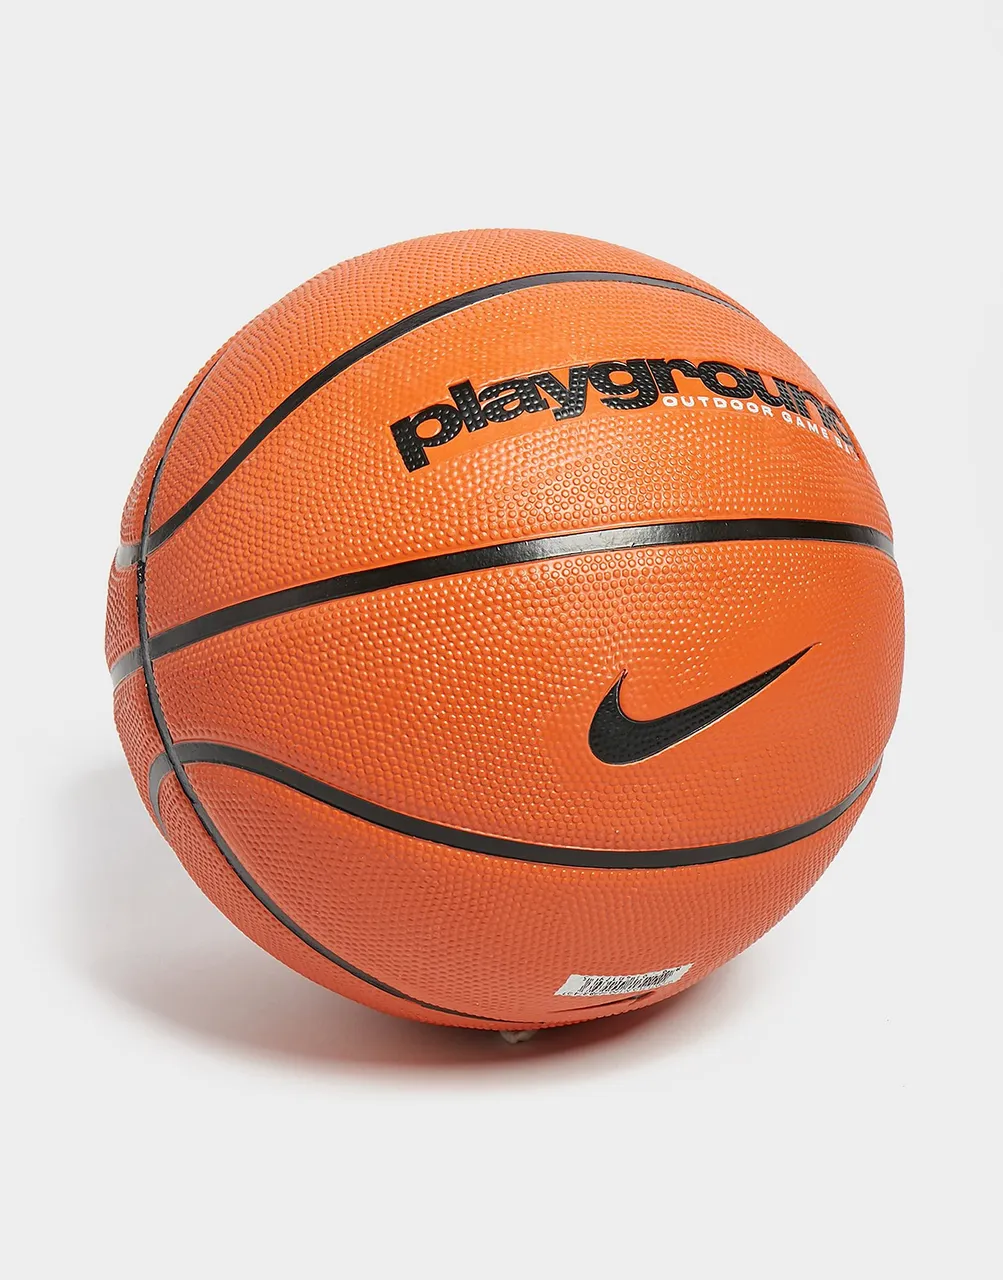 Nike Playground Basketball (Size 7) - Orange